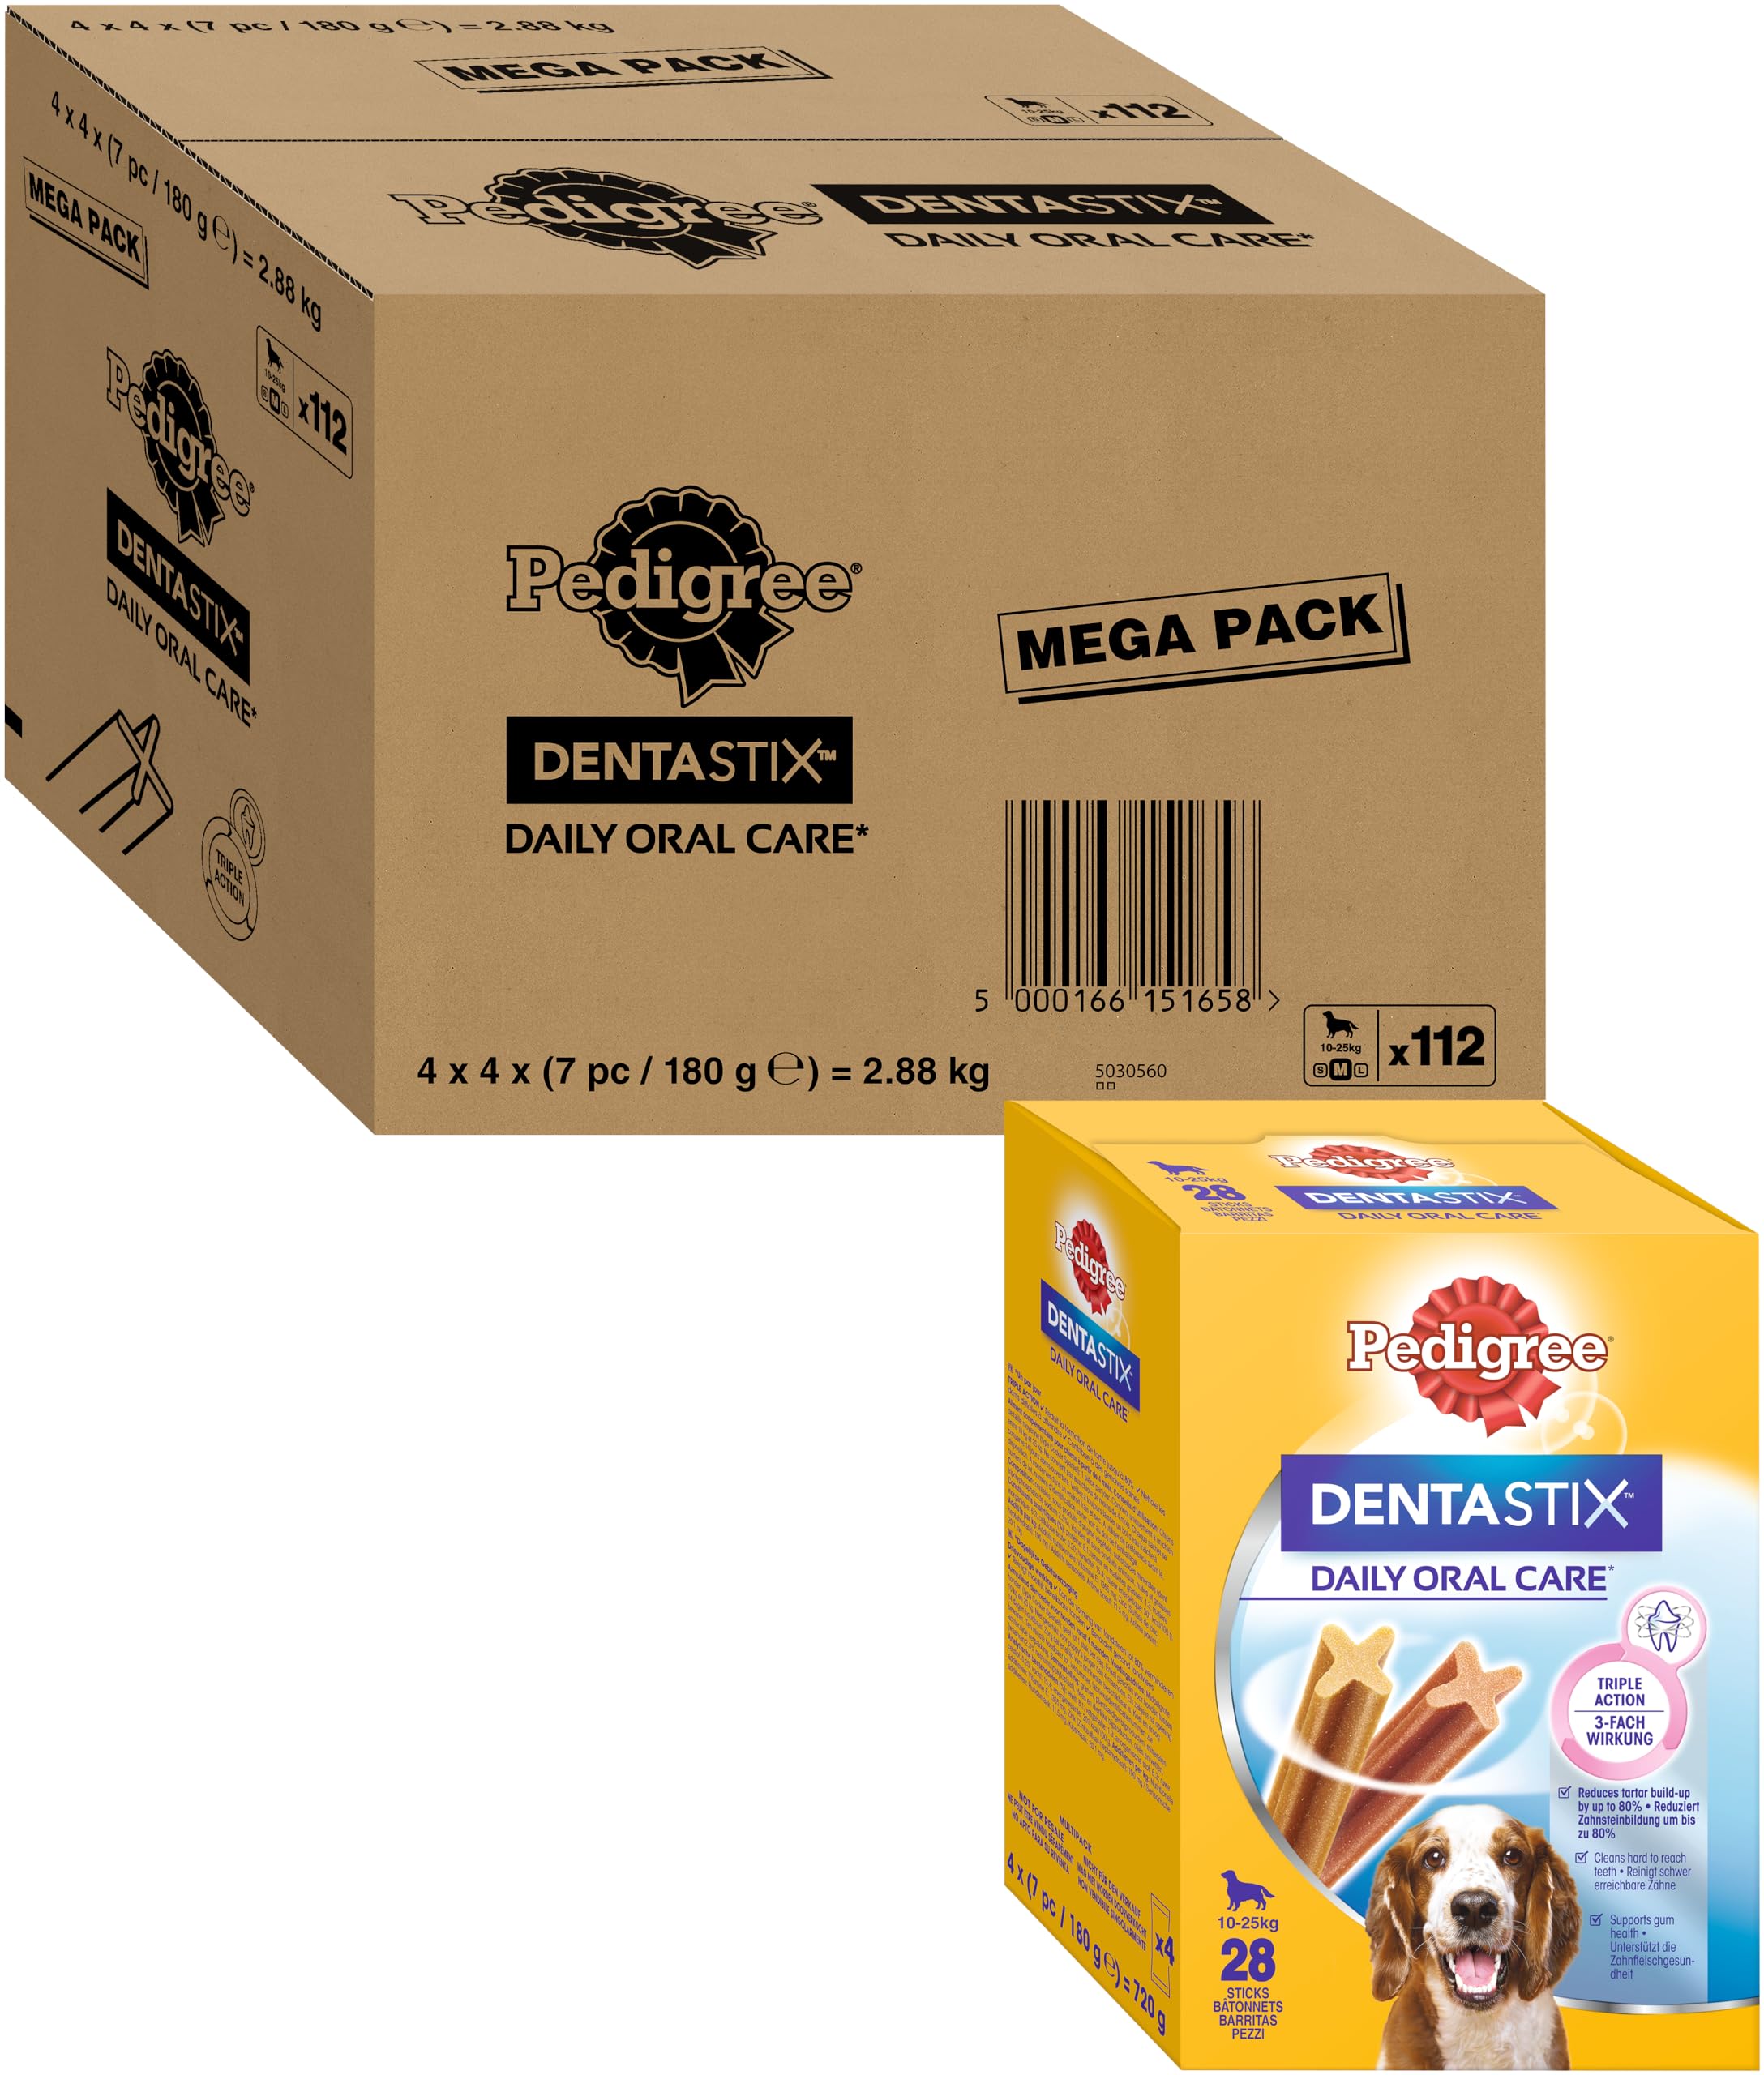 Pedigree DentaStix Daily Oral Care Zahnpflegesnack für mittelgroße Hunde (10–25kg), 112 Stück (1 Großpackung) – Hundeleckerlis mit Huhn– & Rindgeschmack für jeden Tag, für gesunde Zähne